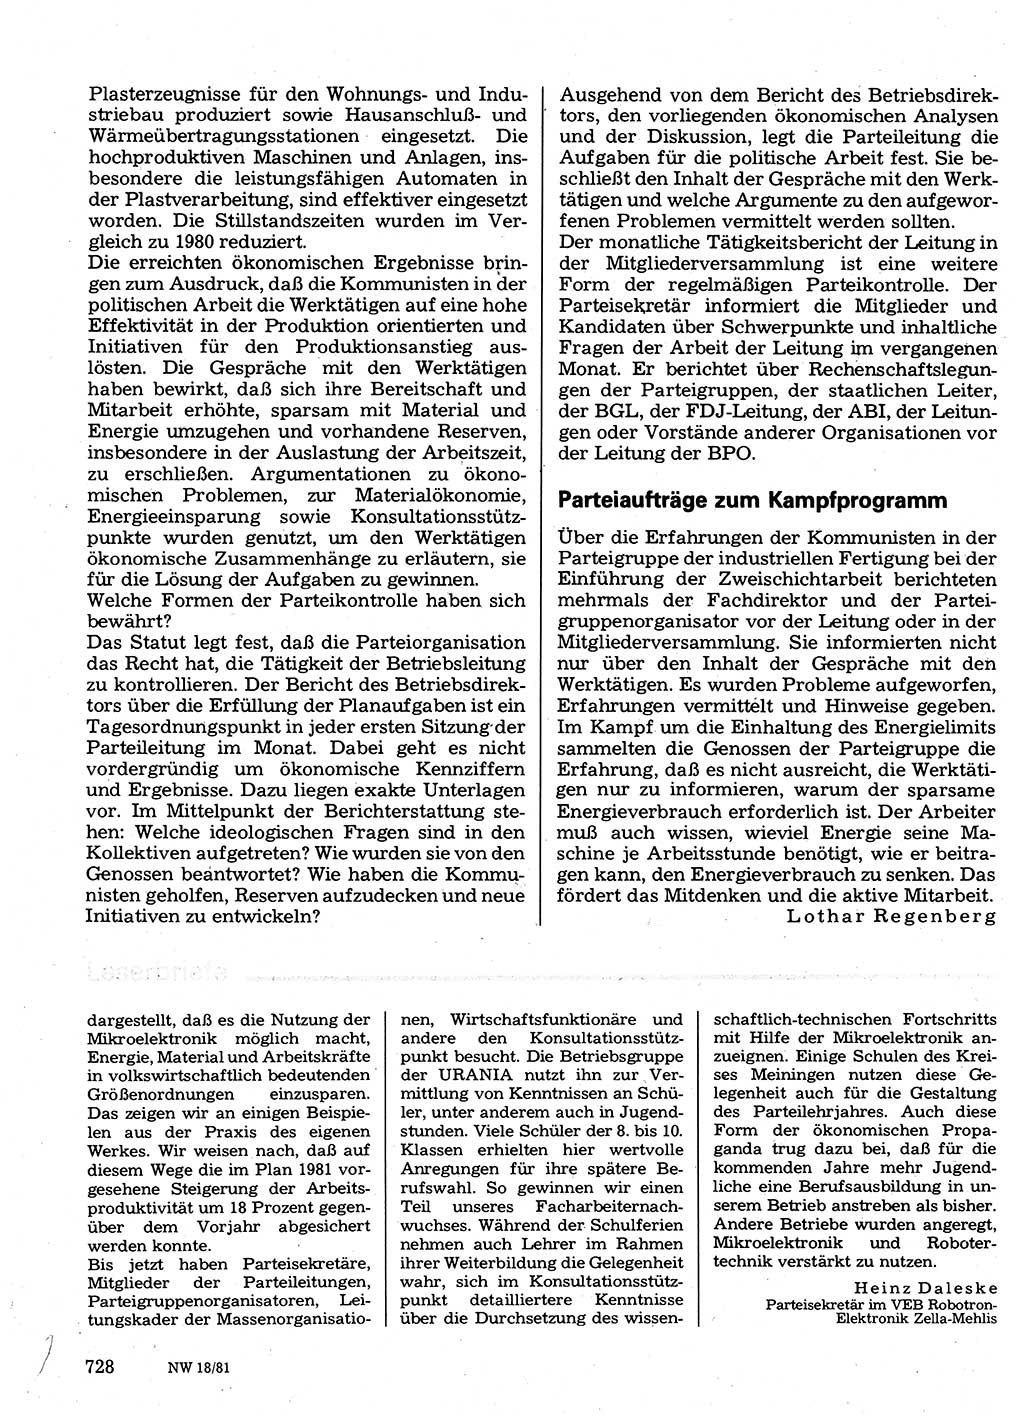 Neuer Weg (NW), Organ des Zentralkomitees (ZK) der SED (Sozialistische Einheitspartei Deutschlands) für Fragen des Parteilebens, 36. Jahrgang [Deutsche Demokratische Republik (DDR)] 1981, Seite 728 (NW ZK SED DDR 1981, S. 728)